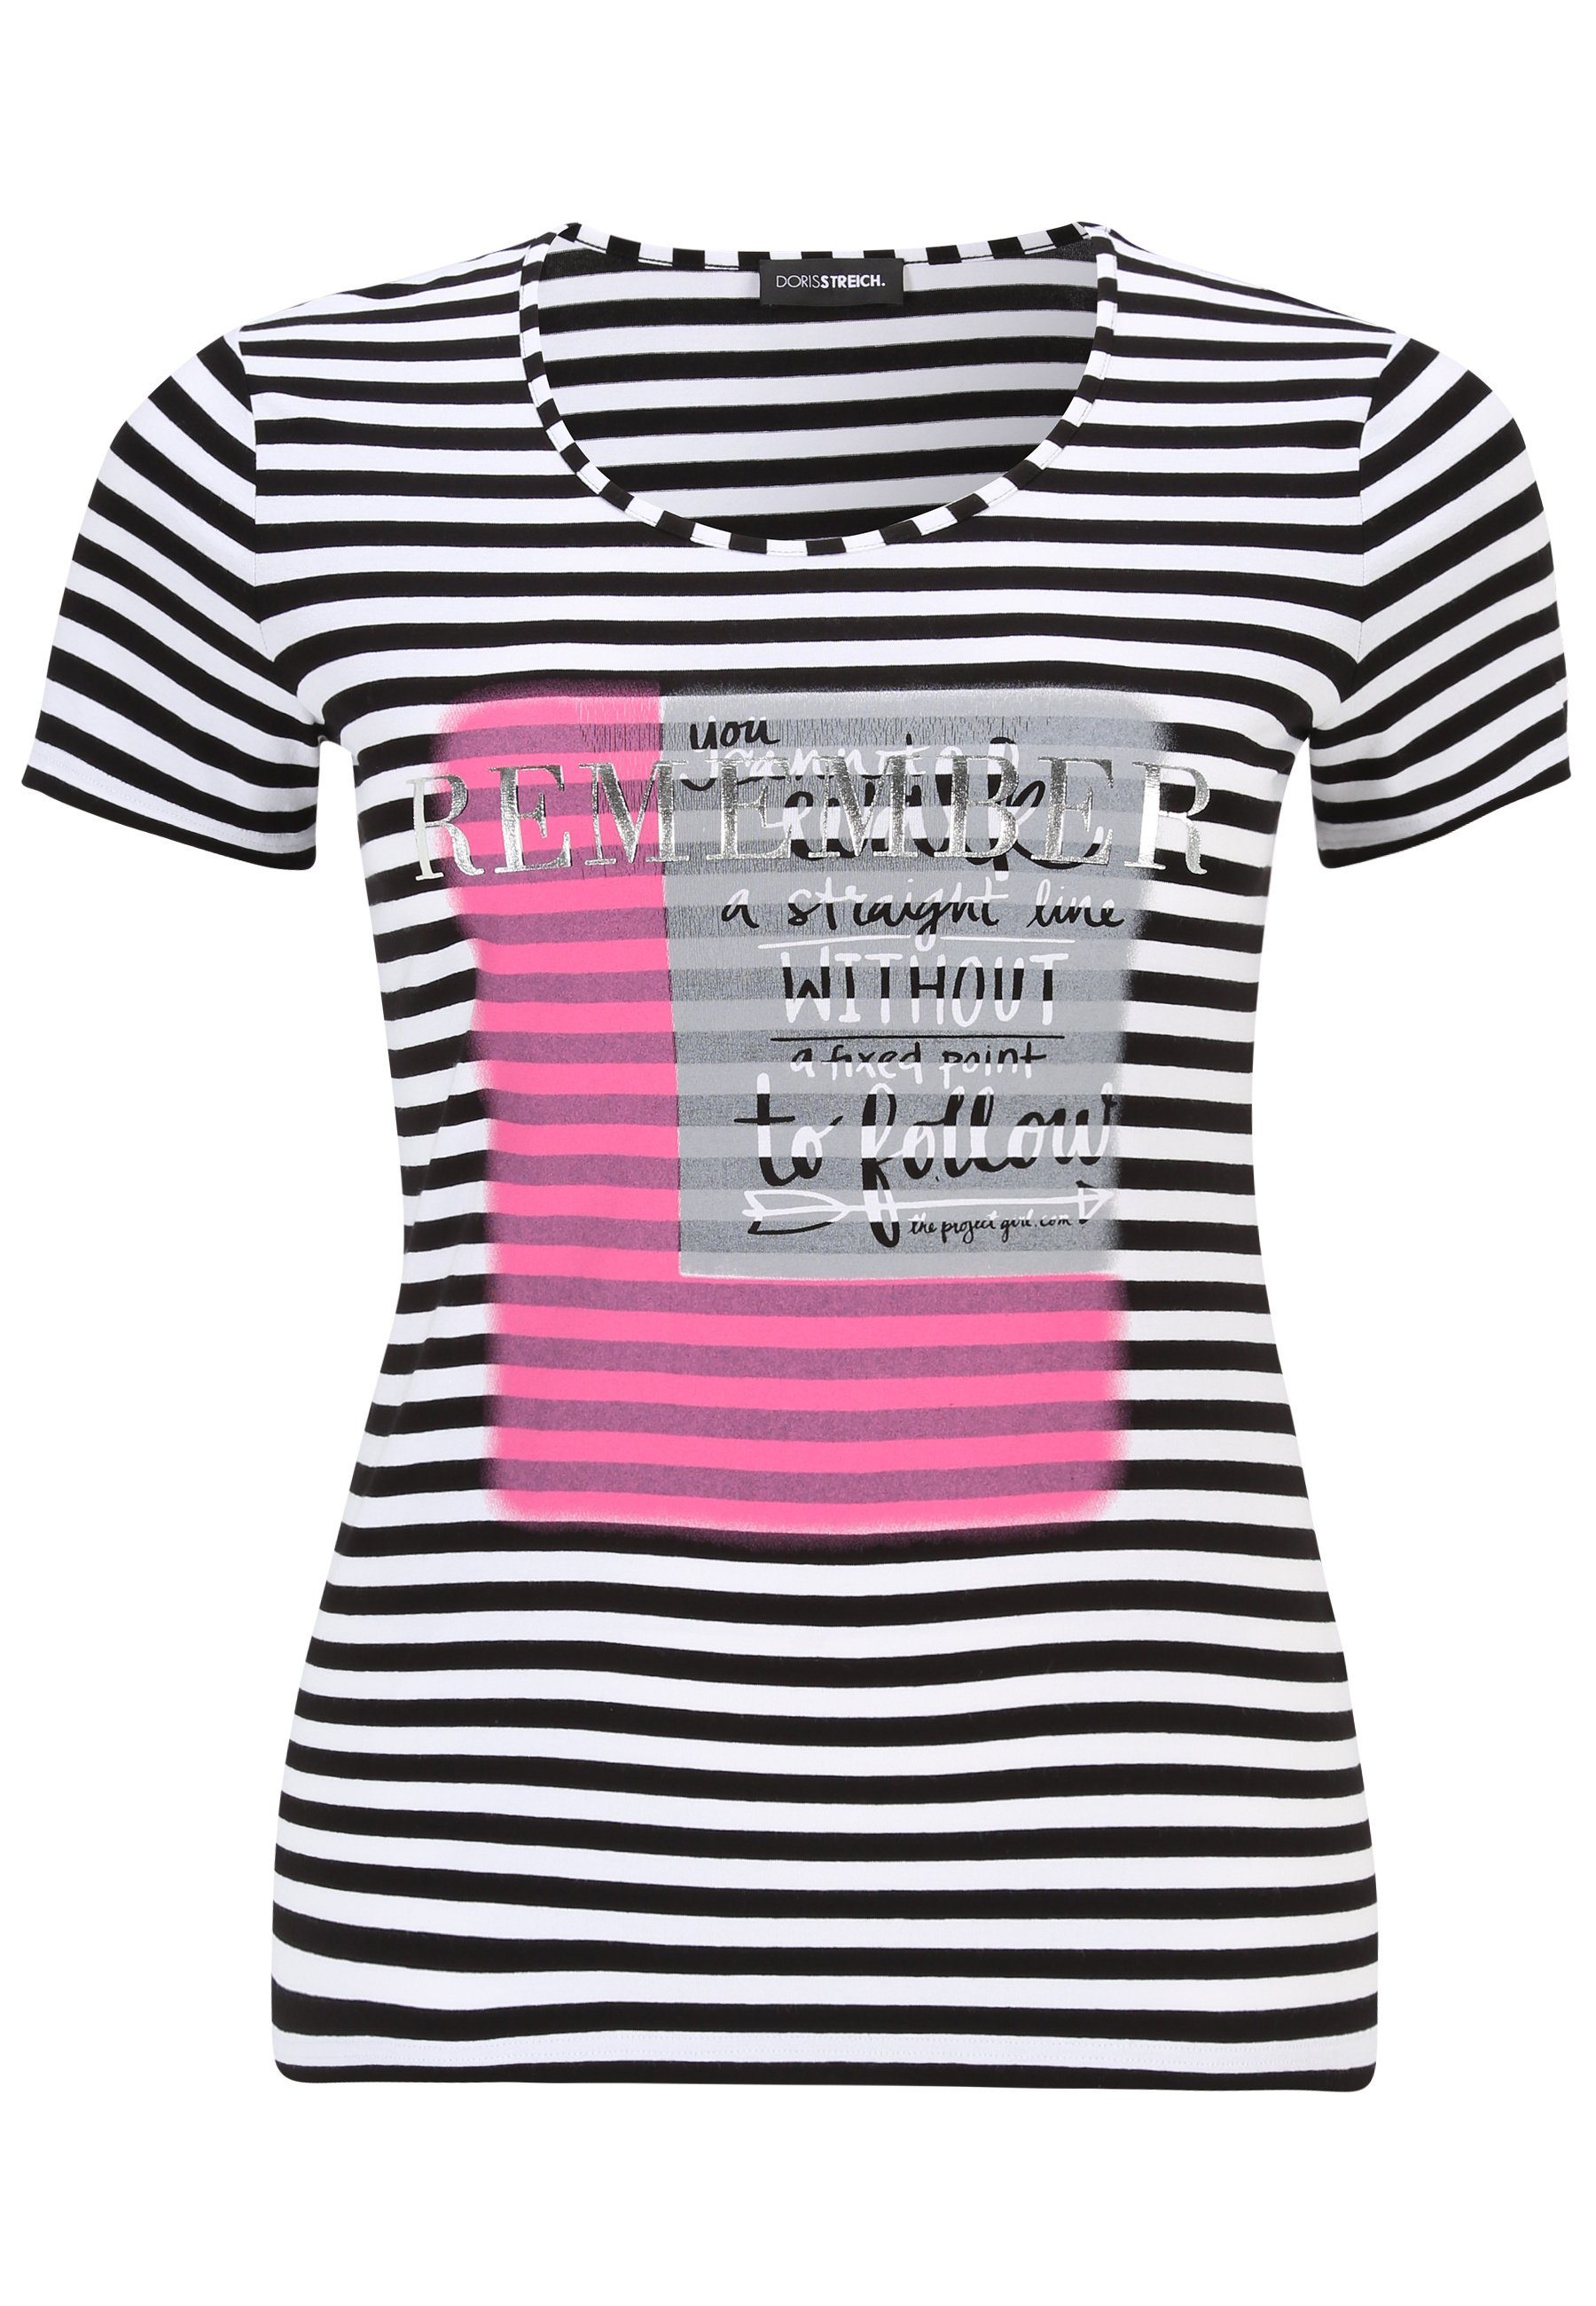 Doris Streich T-Shirt T-Shirt mit Streifen-Muster und Motivprint mit modernem Design